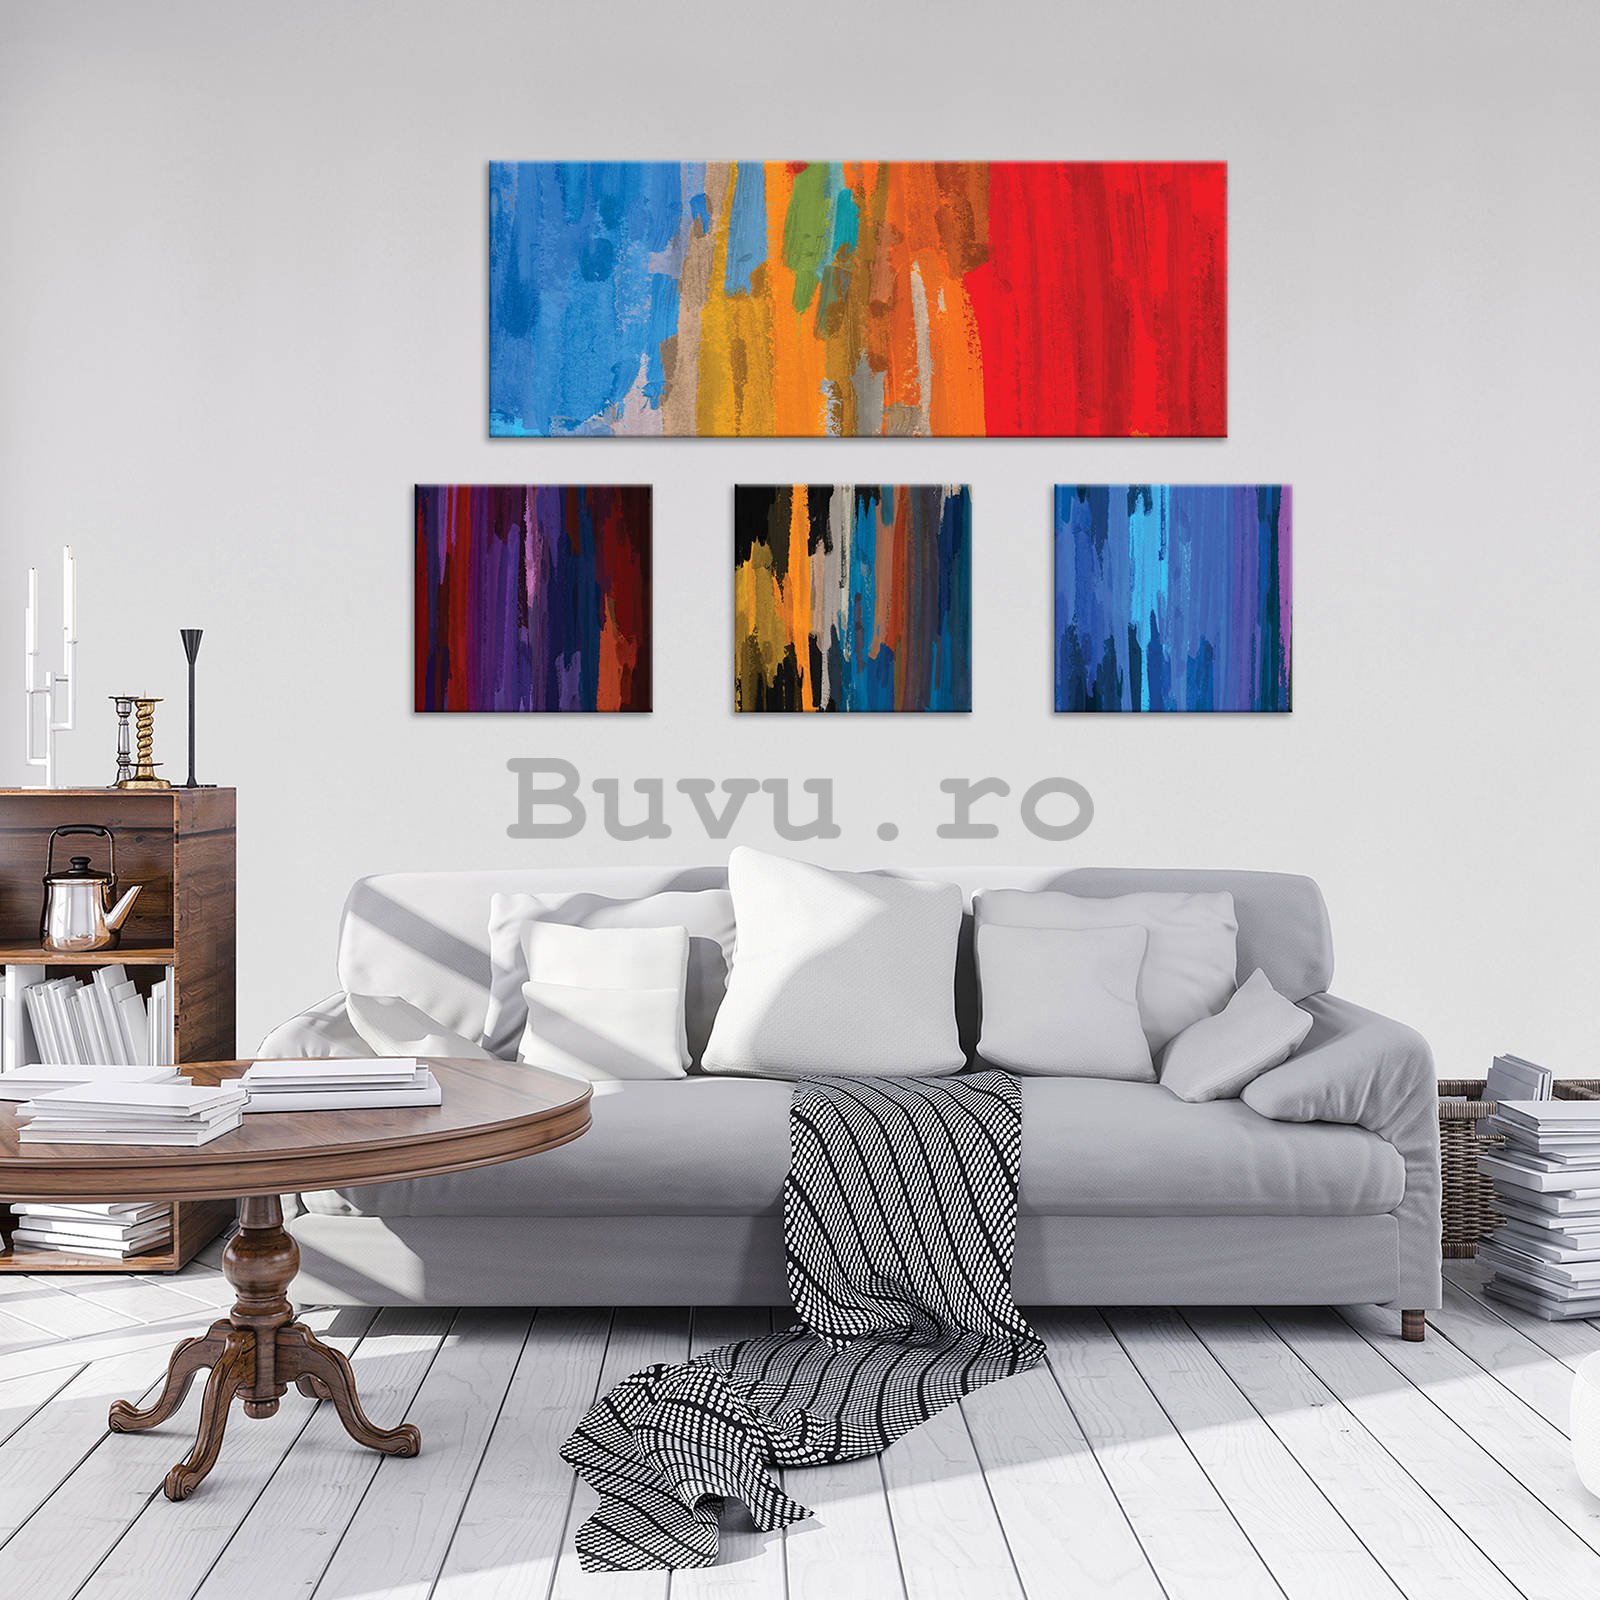 Tablou canvas: Lovituri de perie - set 1 buc 80x30 cm și 3 buc 25,8x24,8 cm